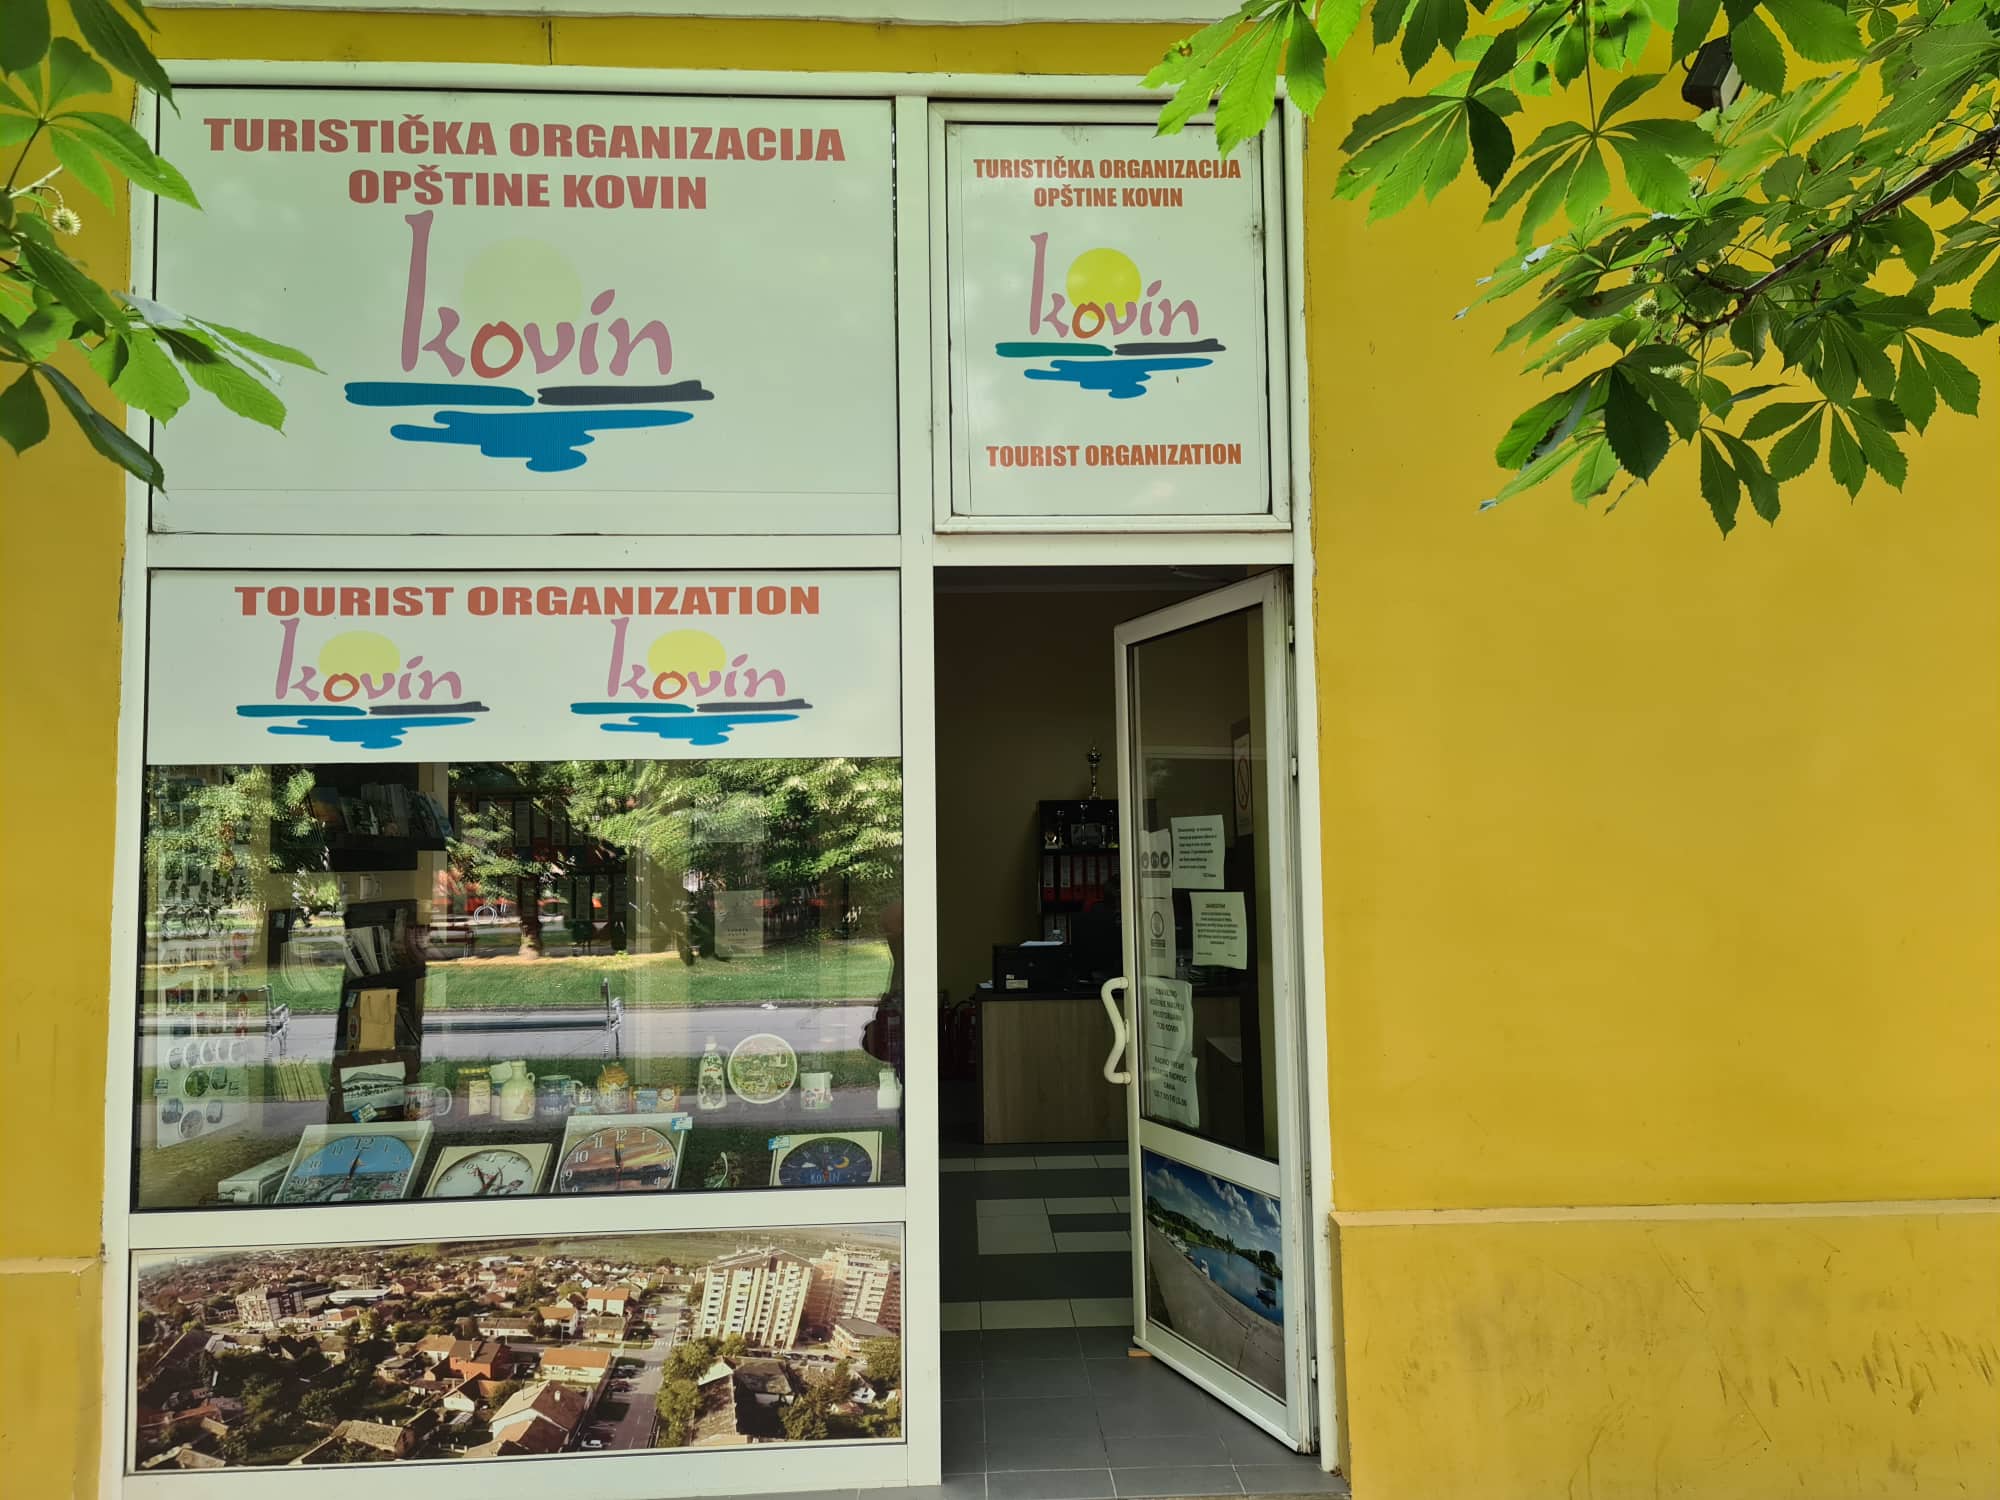 Turistička organizacija opštine Kovin na Sajmu turizma u Beogradu